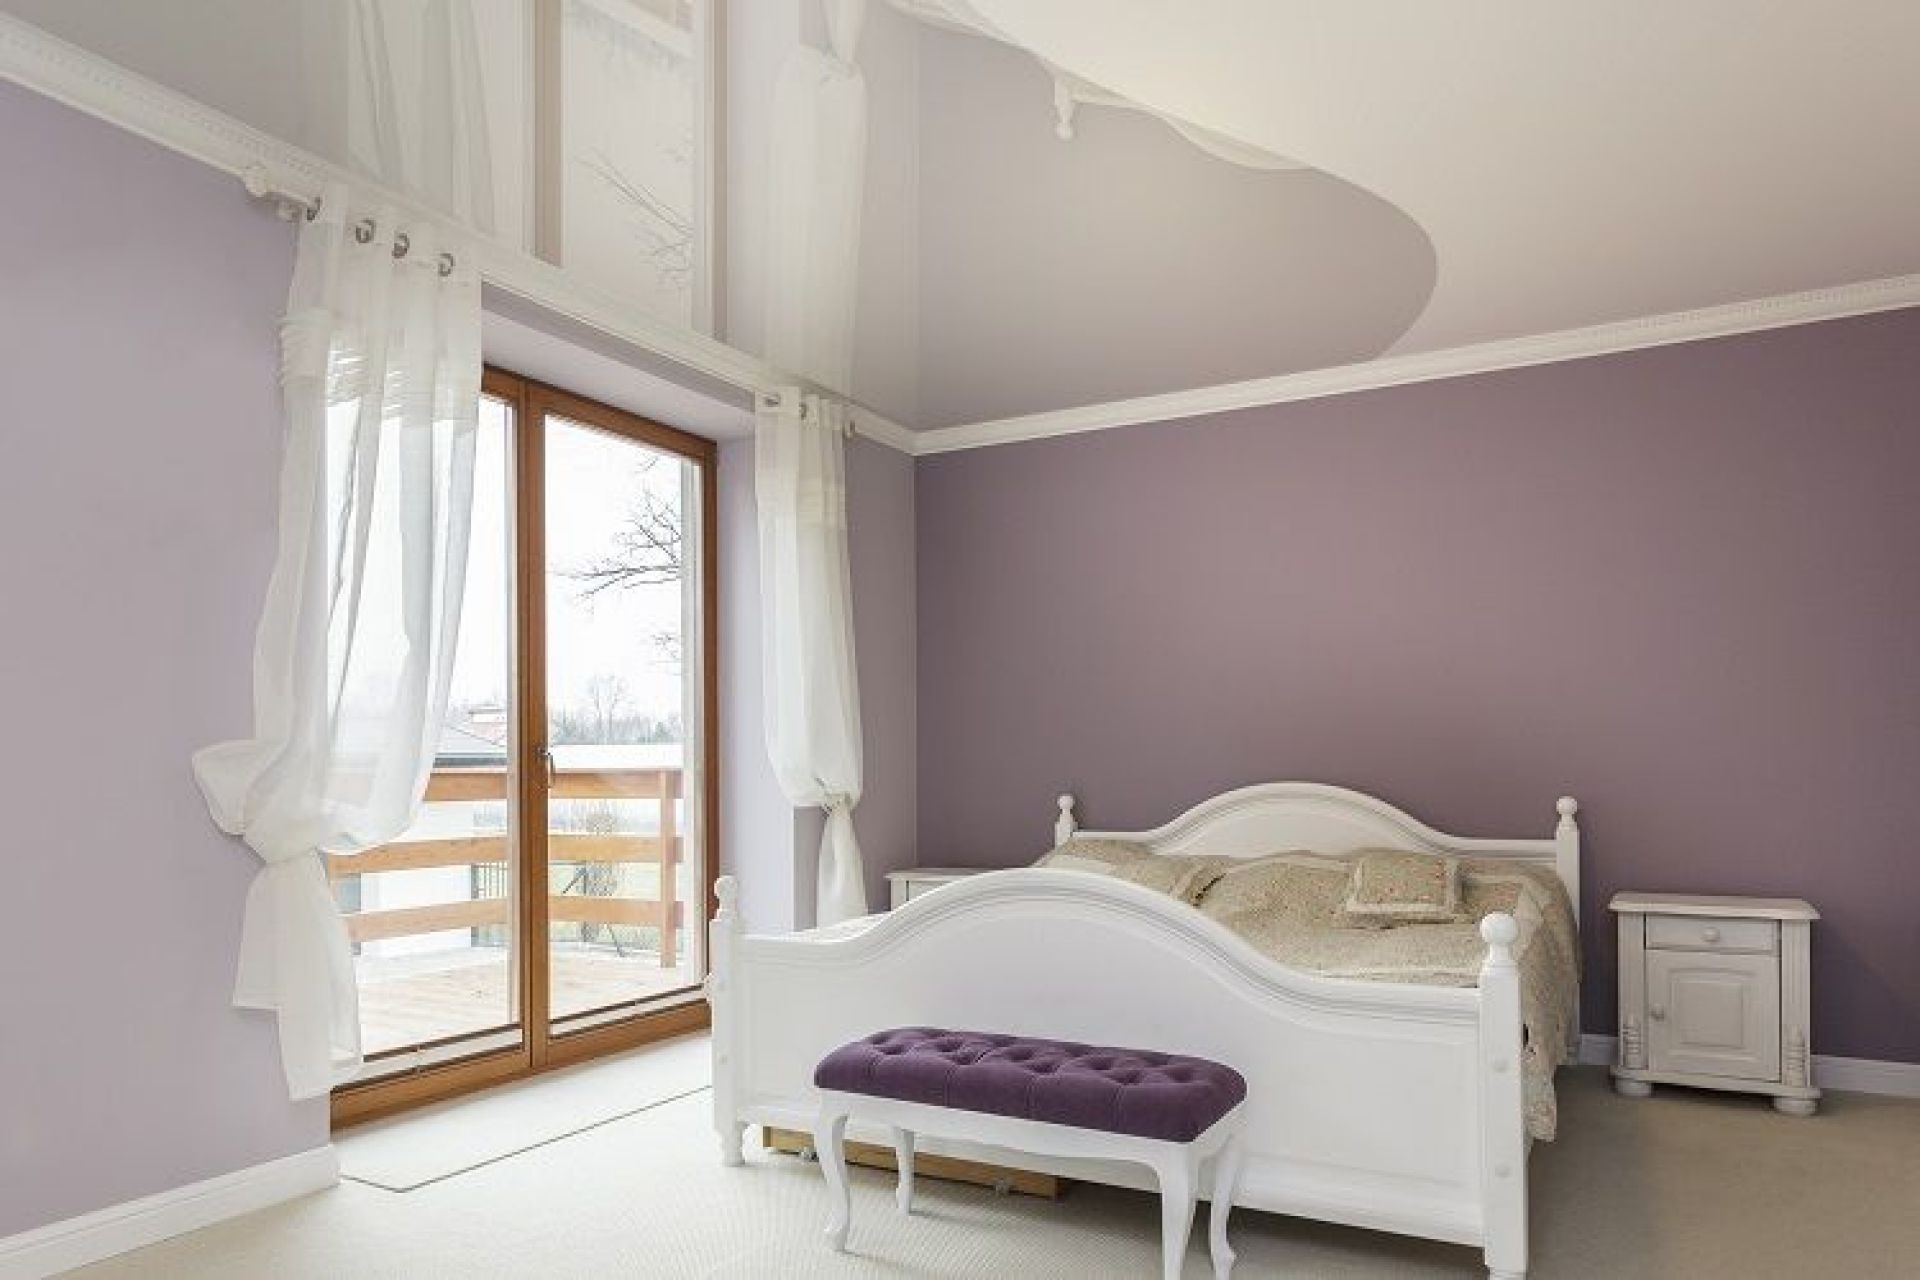 Варианты покраски стен в спальне двумя цветами